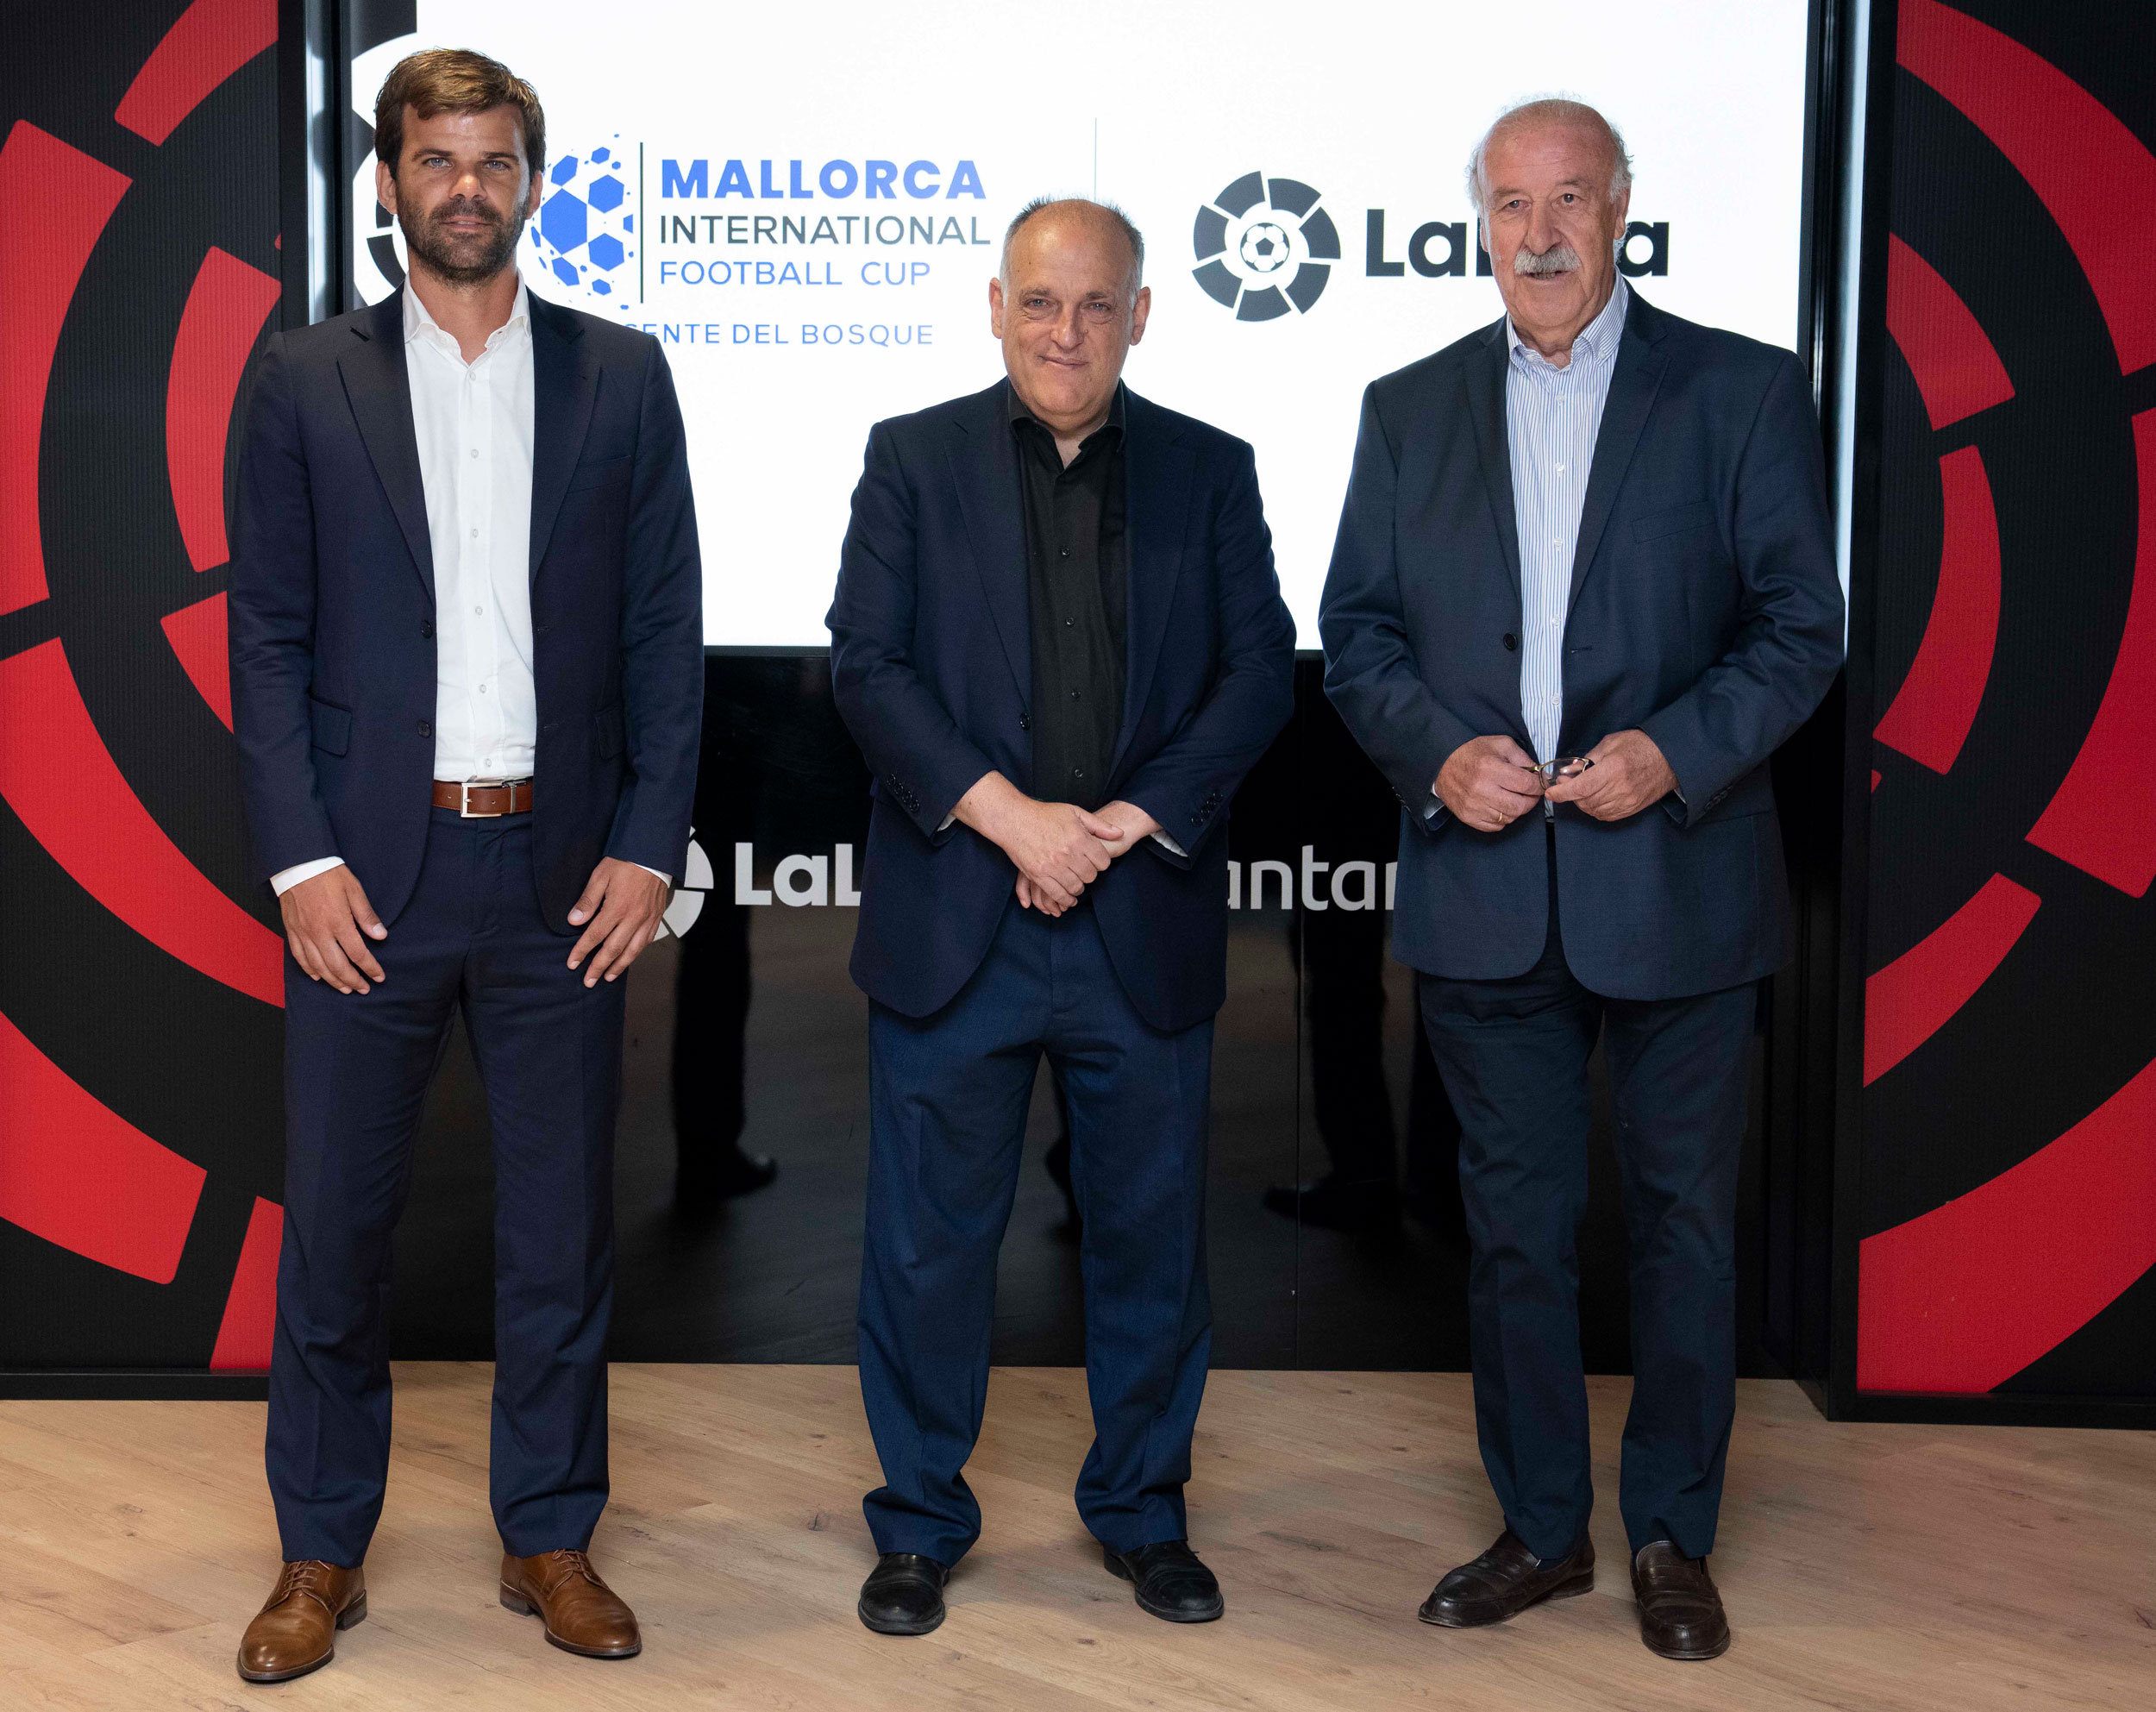 LaLiga y Vicente del Bosque Football Academy firman un convenio para impulsar la “Mallorca International Football Cup”